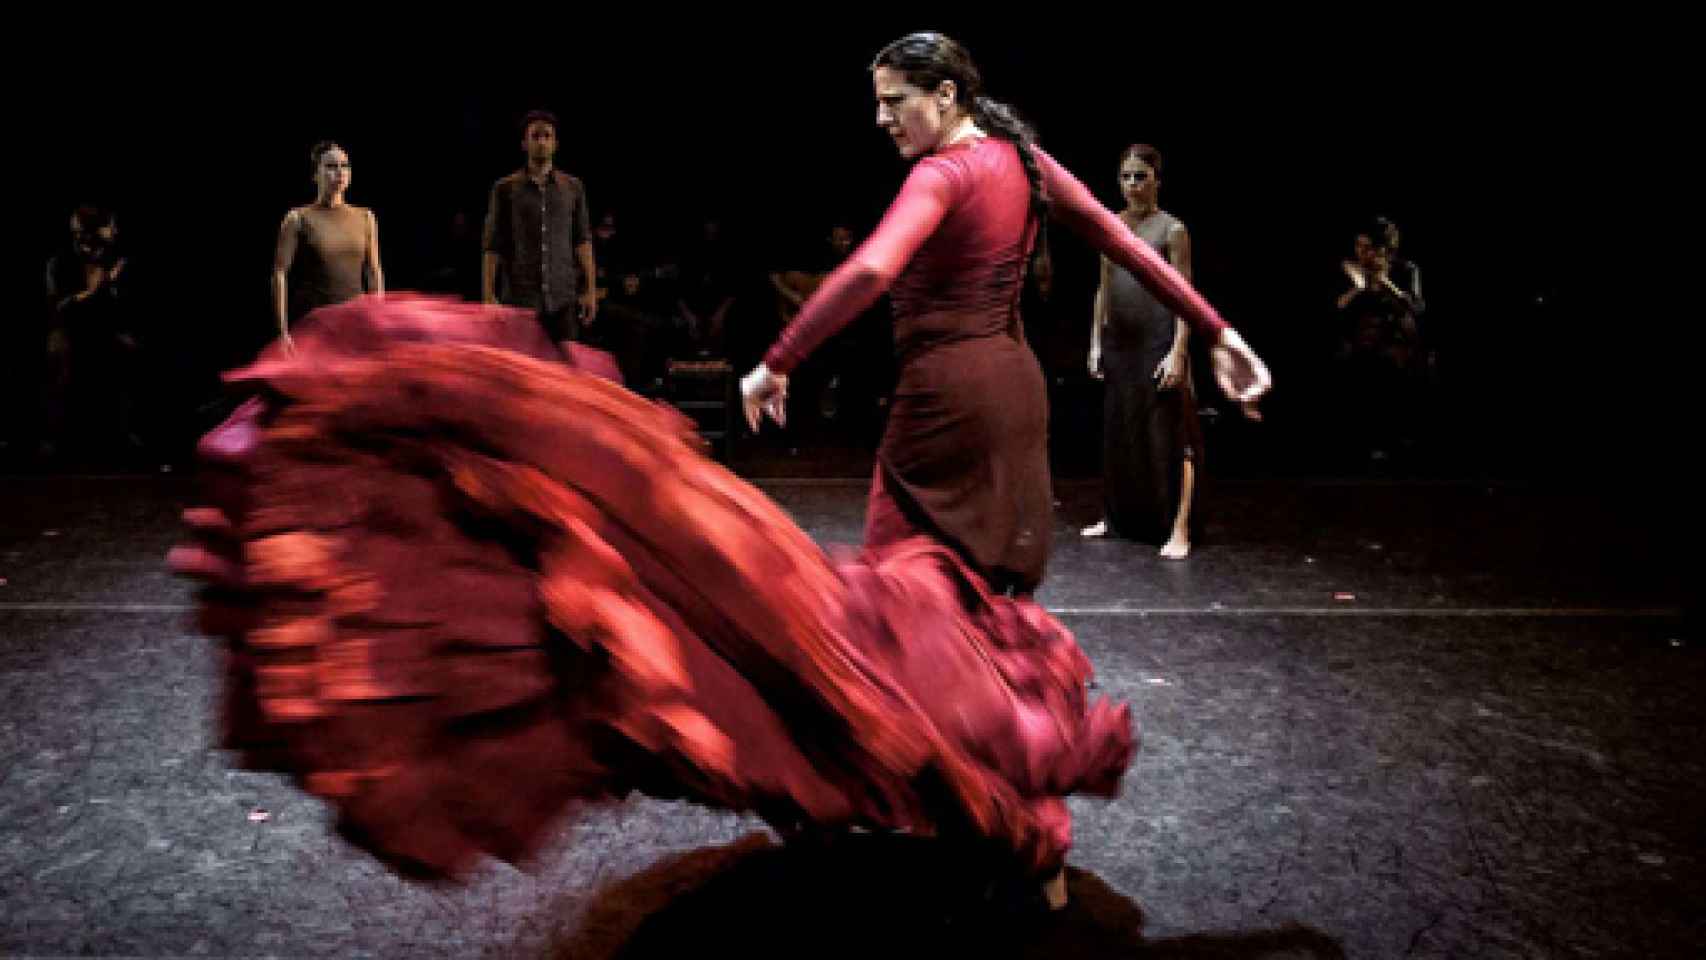 Image: Pagés y Bayón, el baile de la memoria